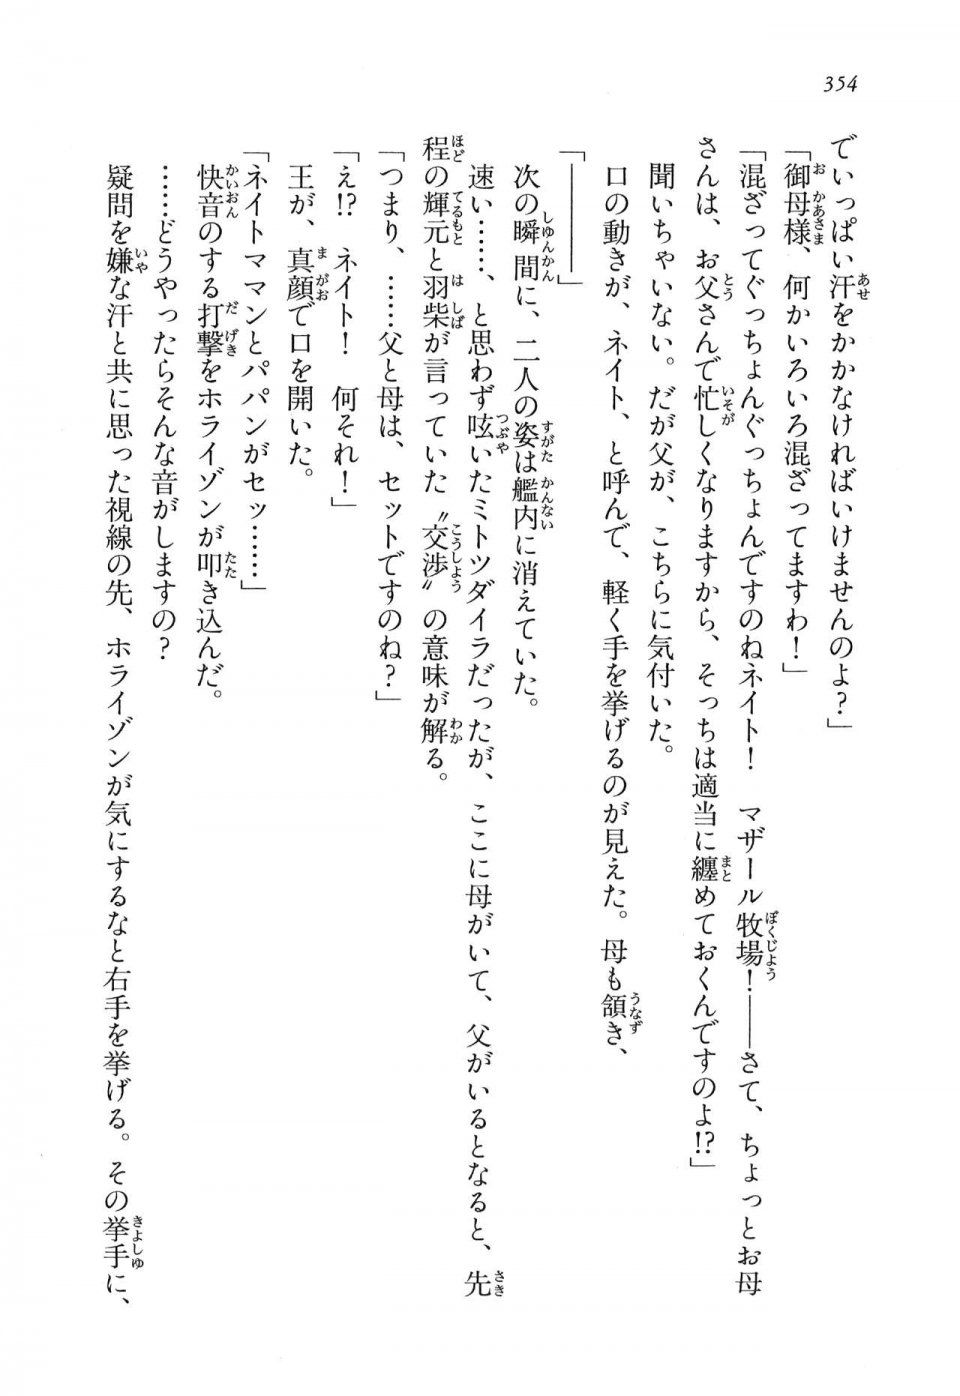 Kyoukai Senjou no Horizon LN Vol 16(7A) - Photo #354